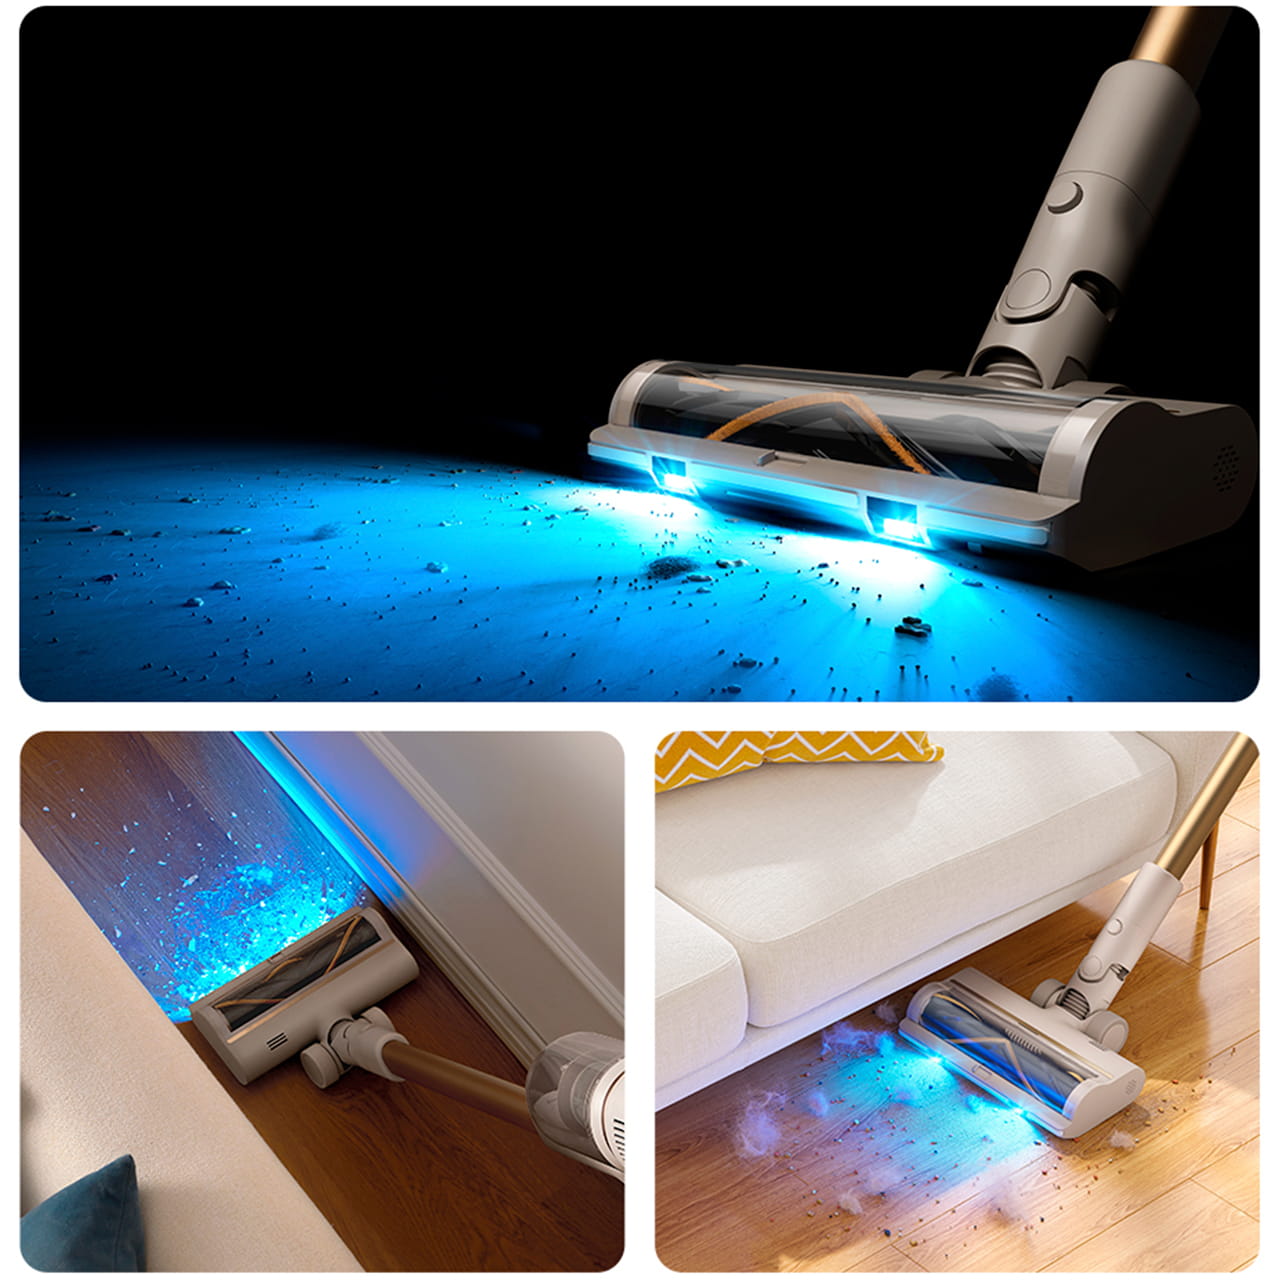 В турбо-щётке Dreame U20 есть LED-подсветка, которая поможет при уборке в каждом уголке вашего дома